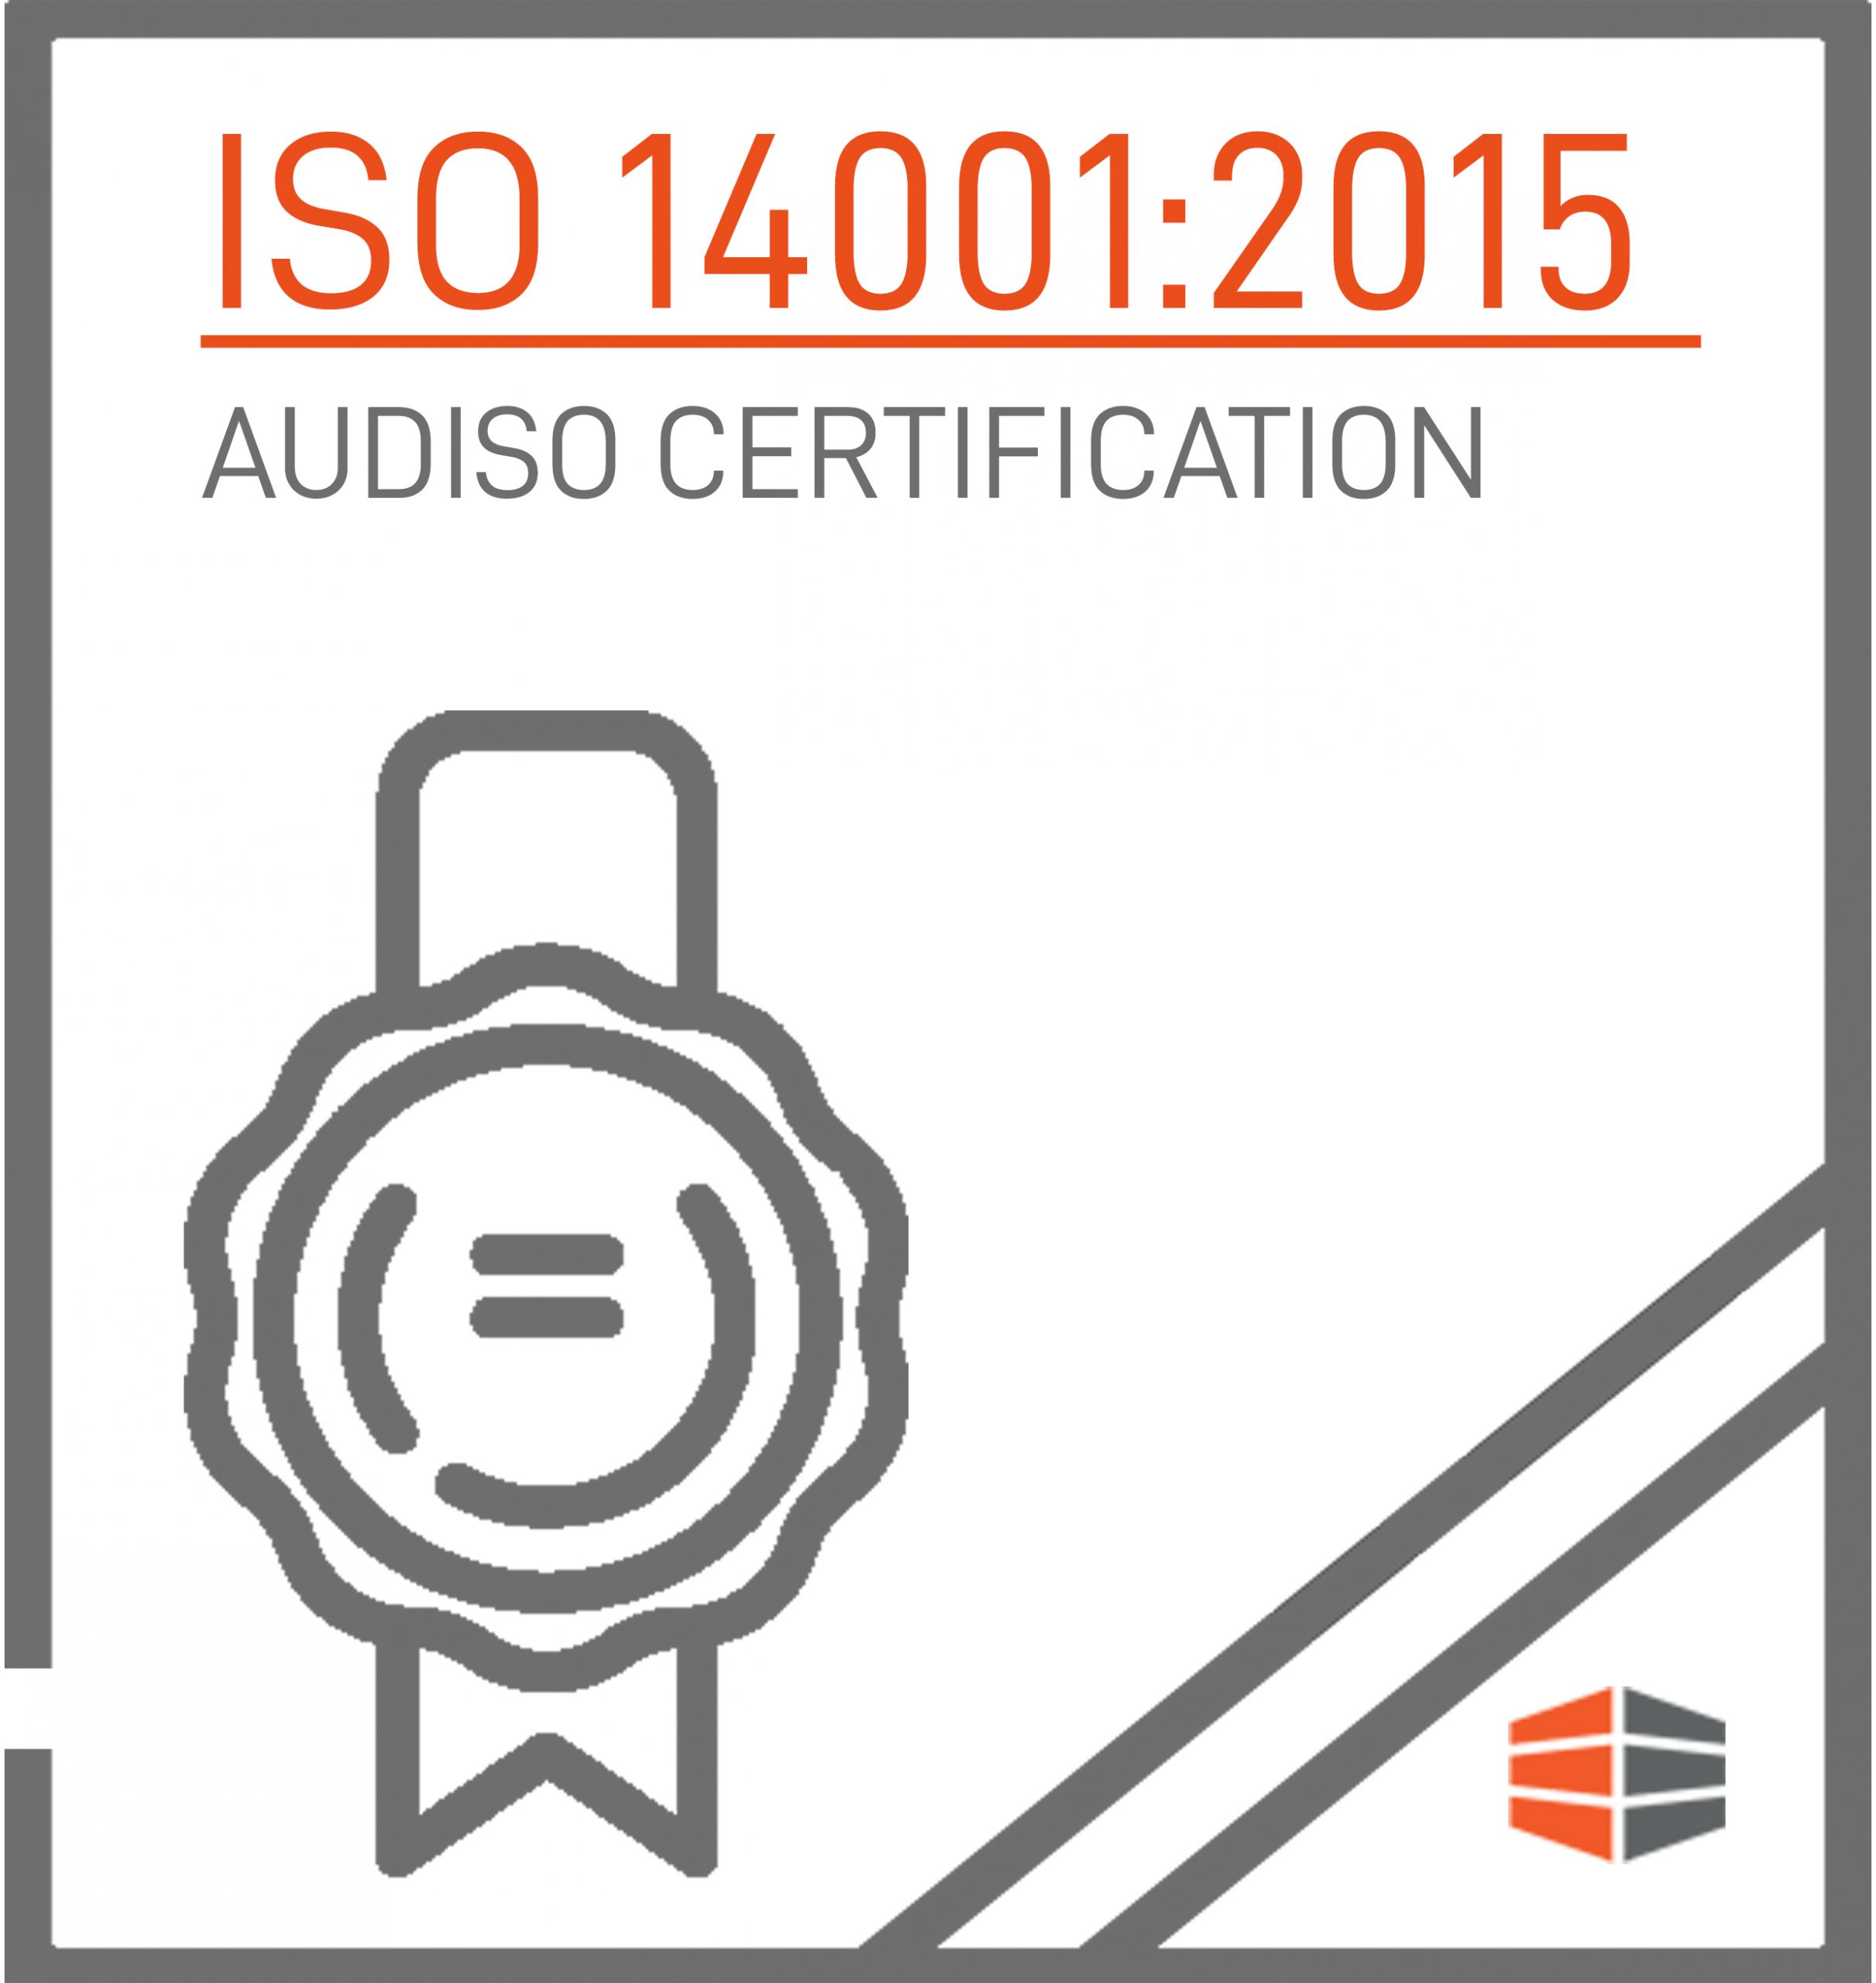 Certificazione  ISO14001:2015 Rilasciata da AUDISO CERTIFICATION